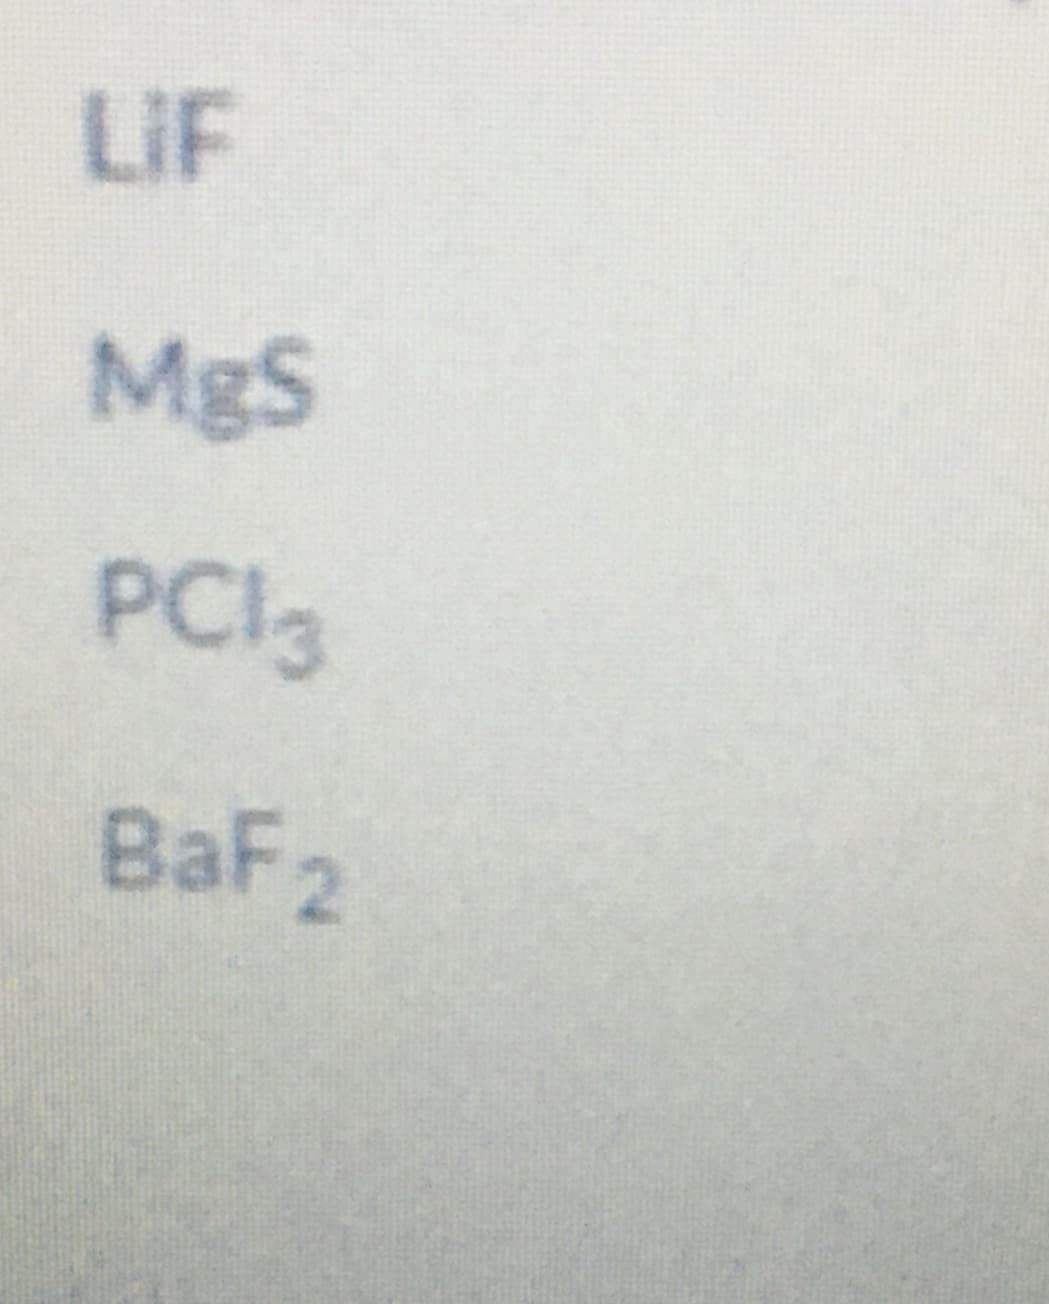 LIF
MgS
PCI3
BaF2
